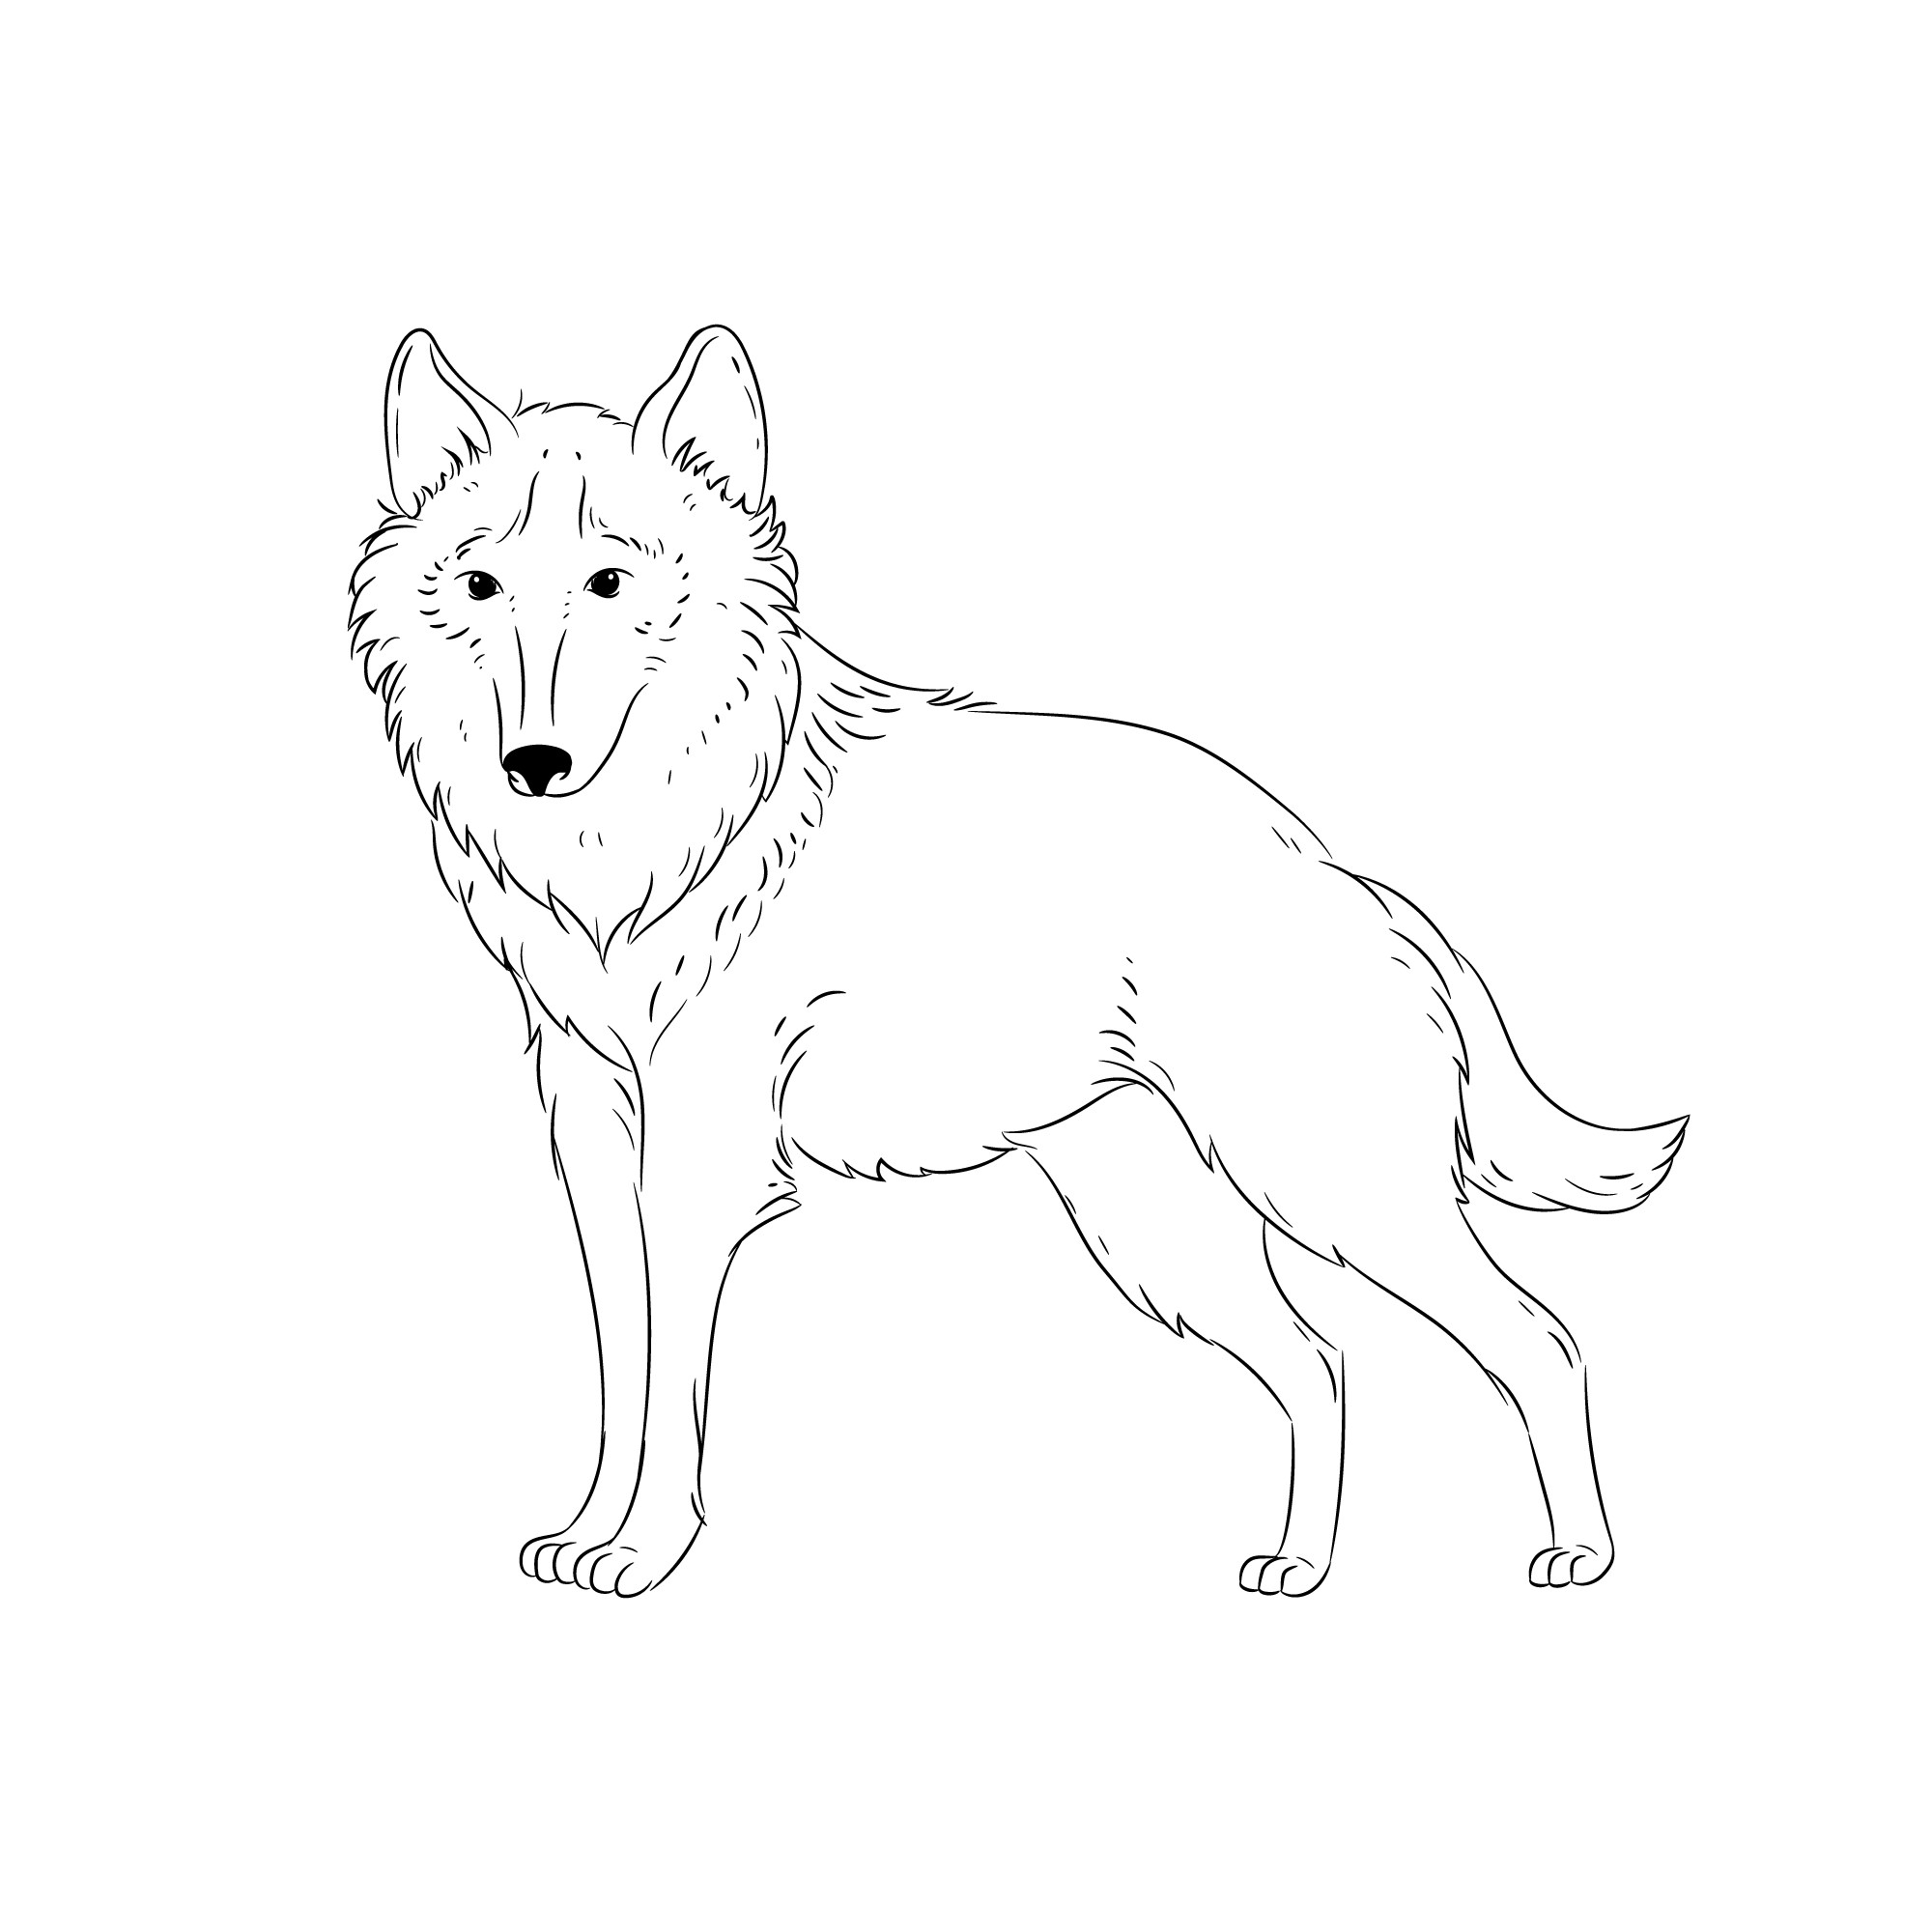 Раскраска для детей: дружелюбный волк